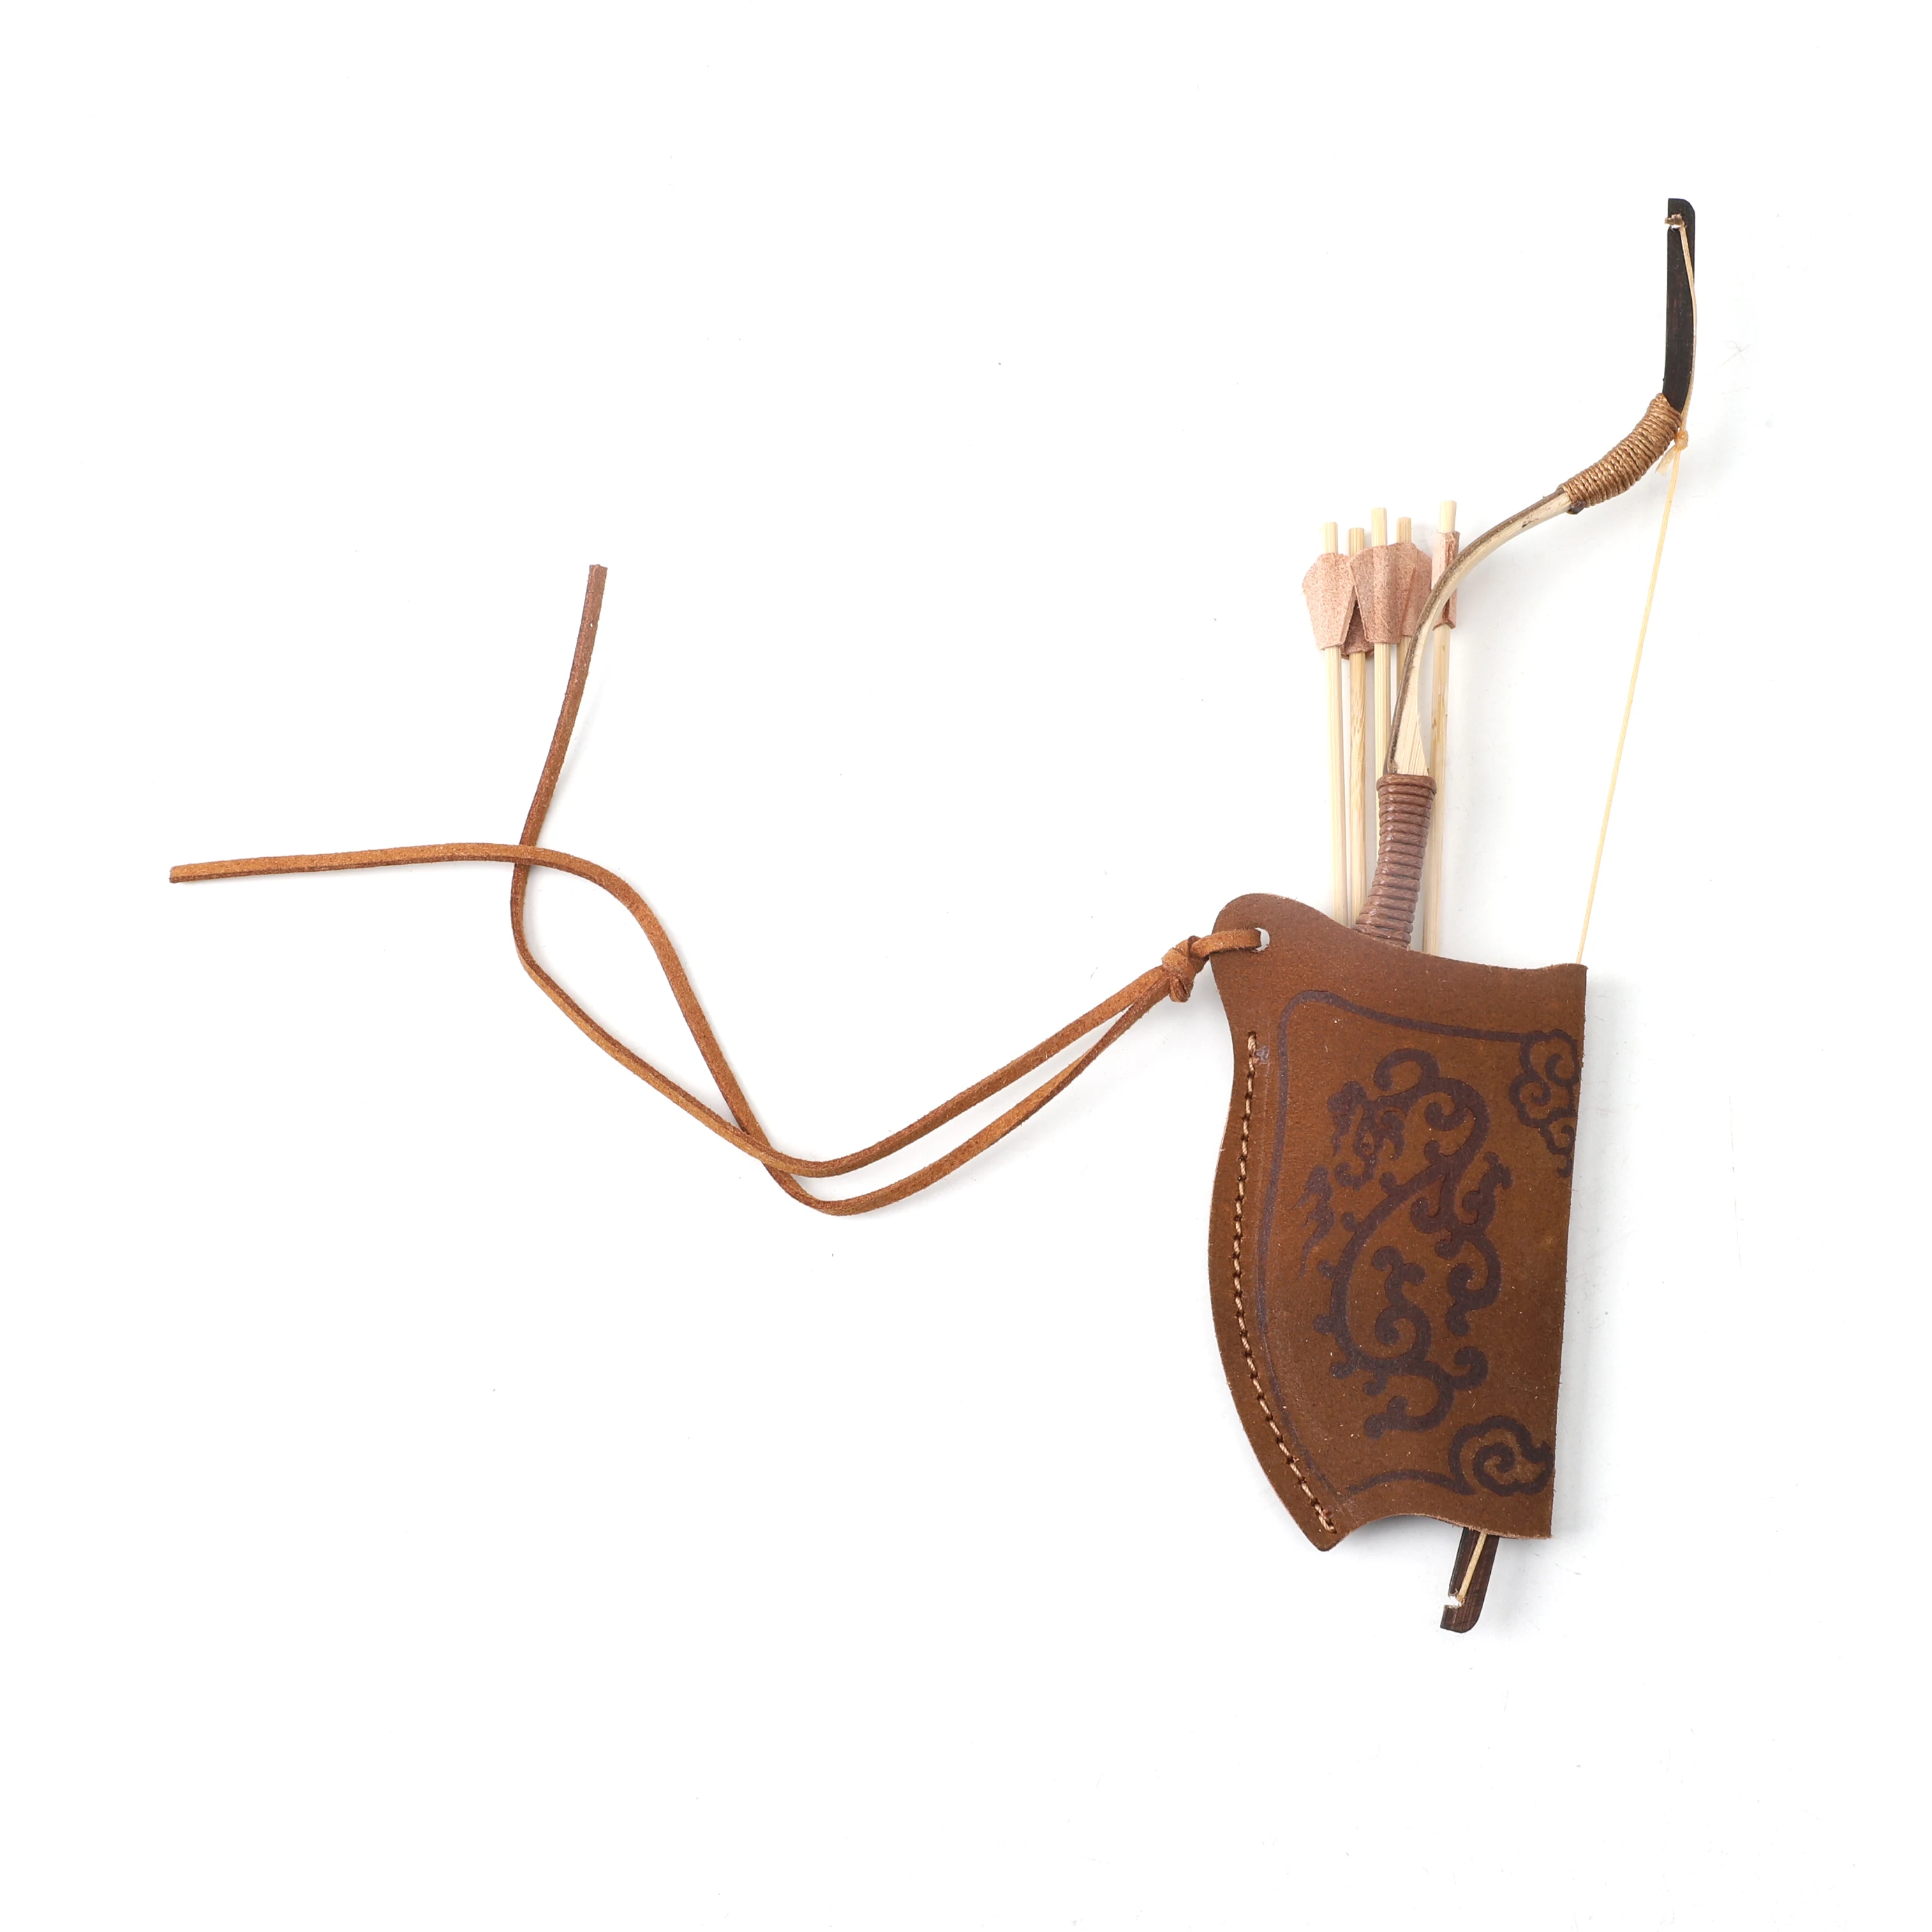 

Миниатюрный Рекурсивный лук с традиционными стрелами, маленький миниатюрный лук с прозрачным луком, товары для стрельбы из лука